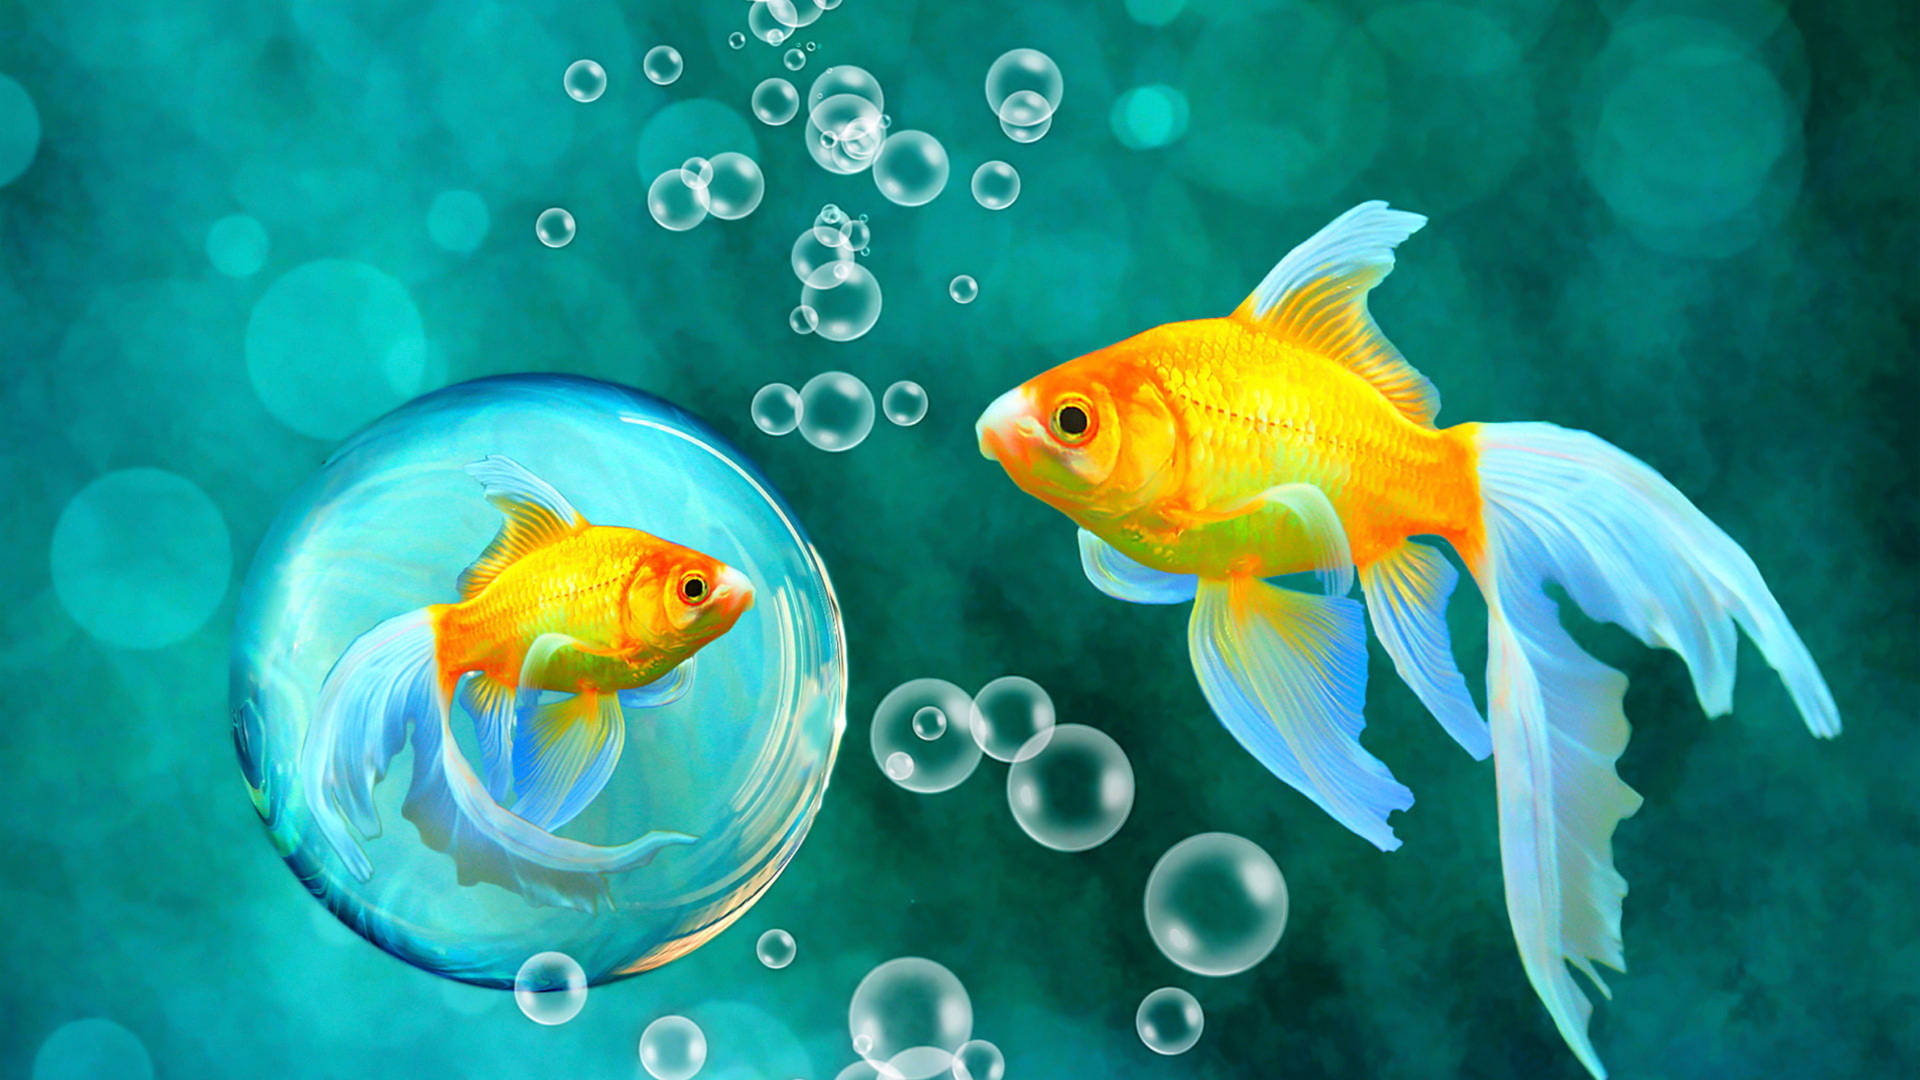 Goldfish Bubble Art Background